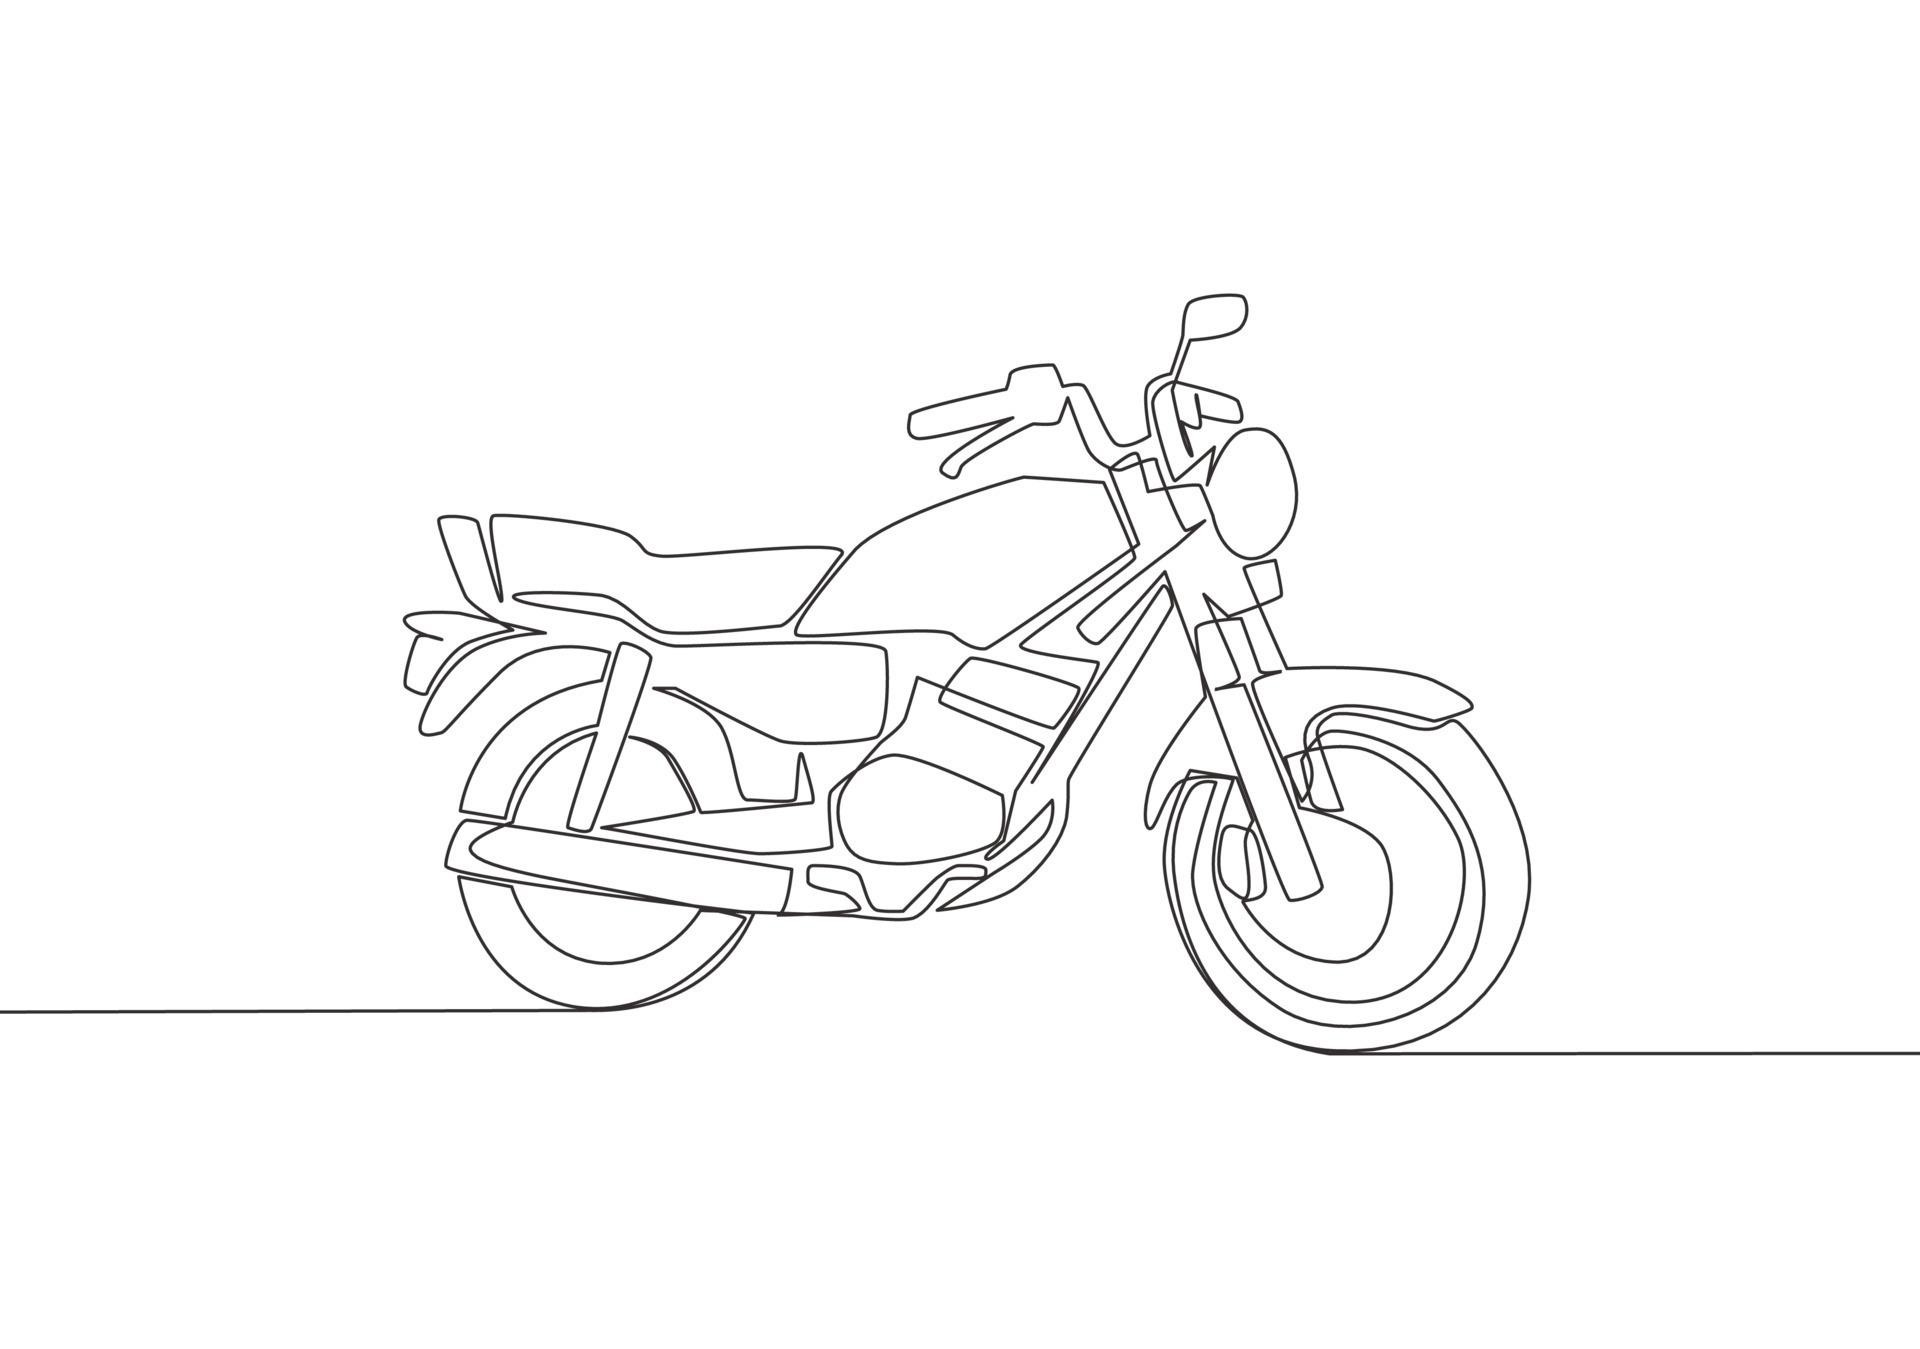 solteiro contínuo linha desenhando do clássico moto logotipo